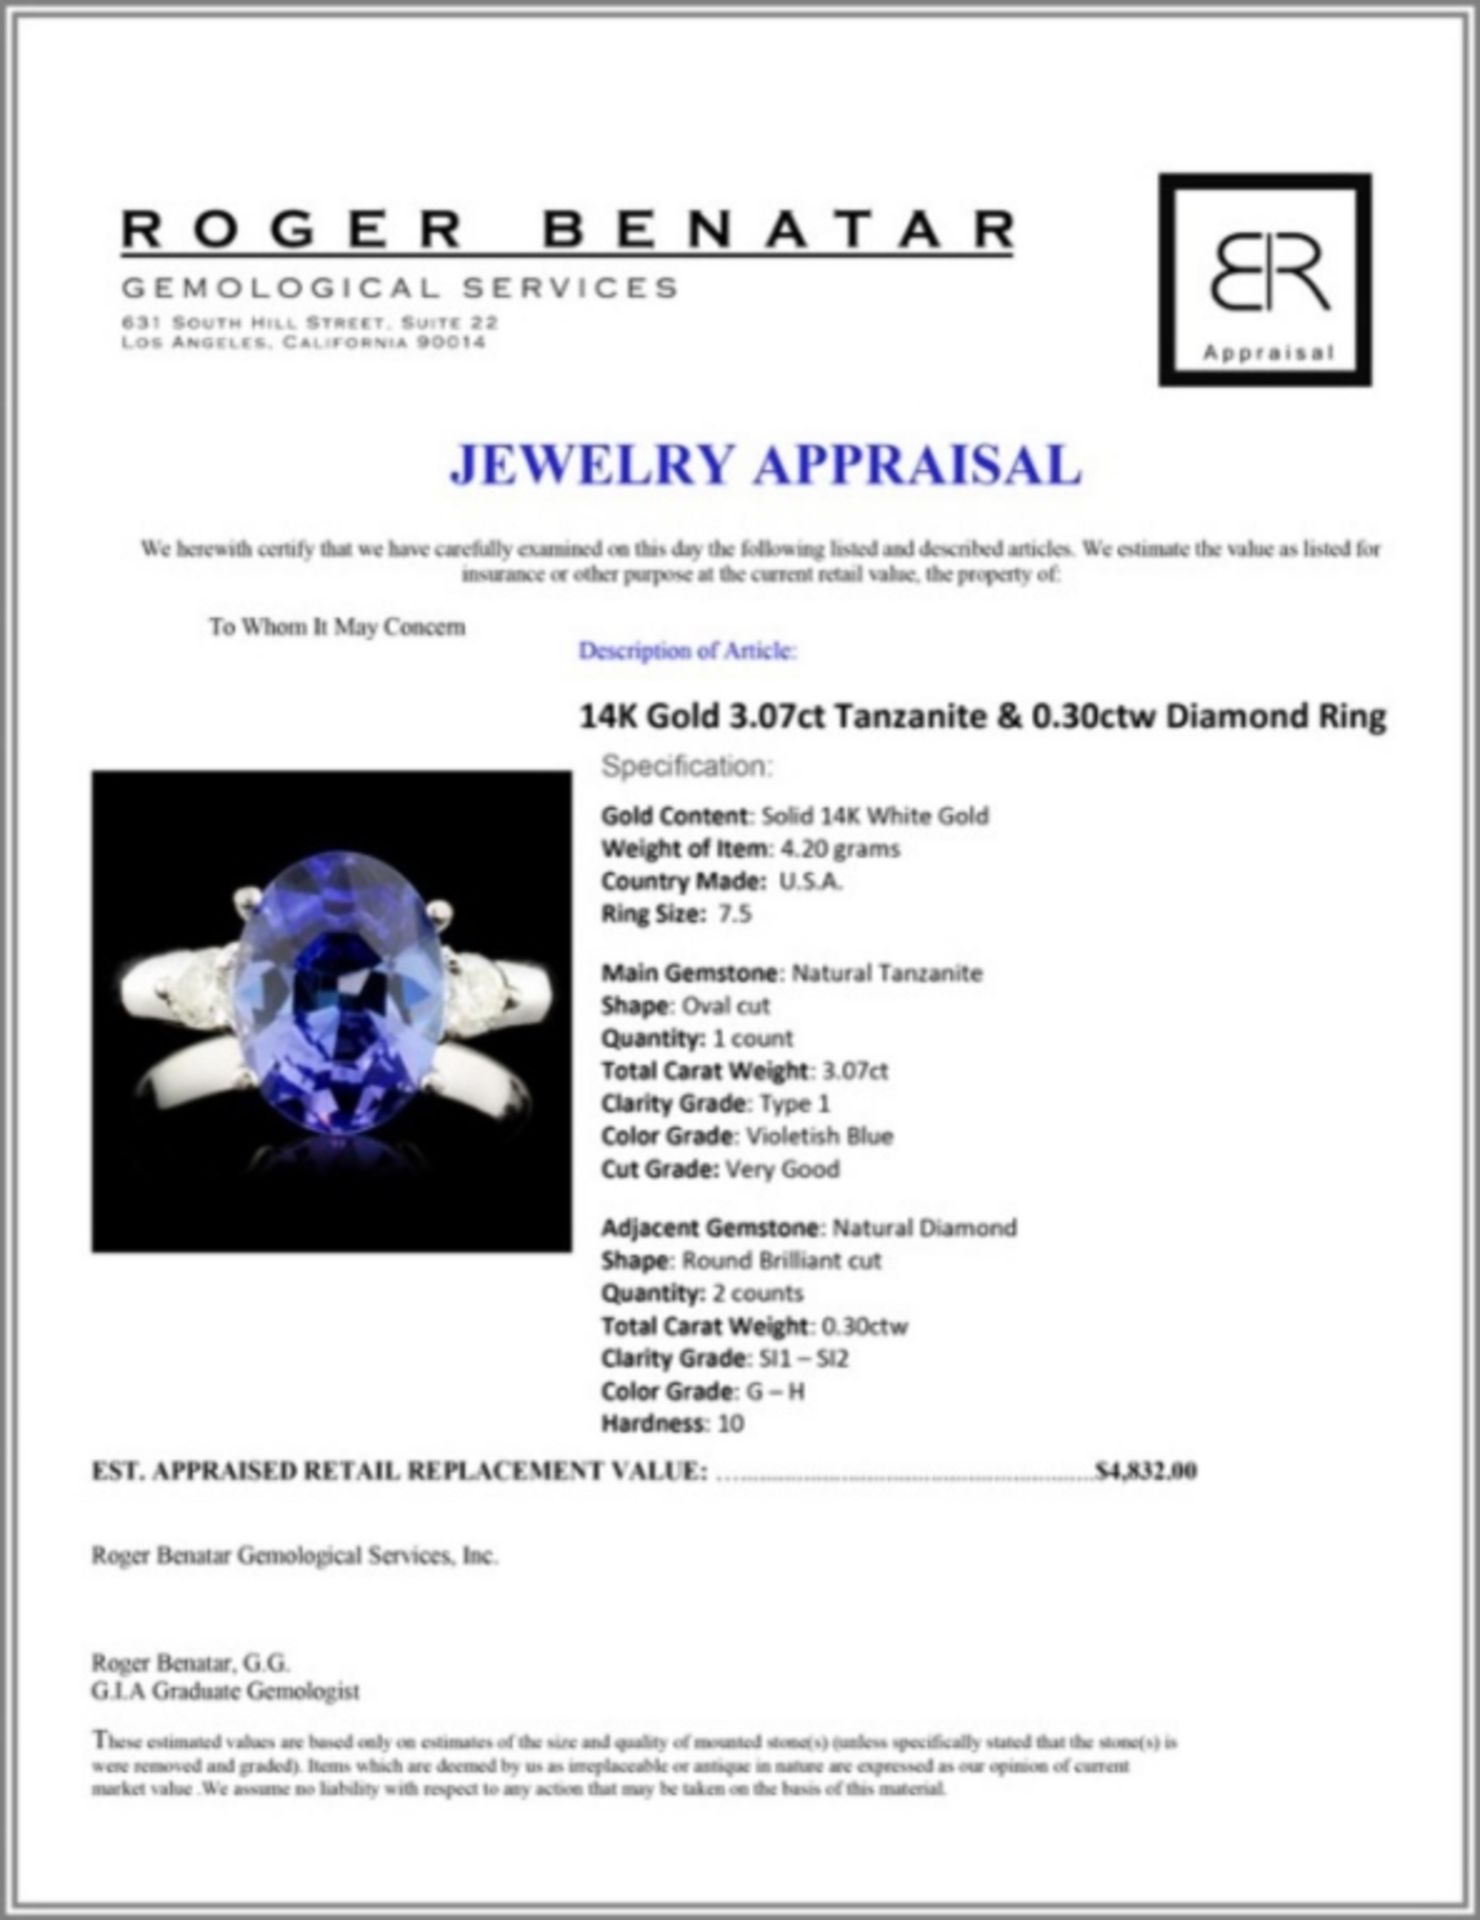 14K Gold 3.07ct Tanzanite & 0.30ctw Diamond Ring - Image 4 of 4